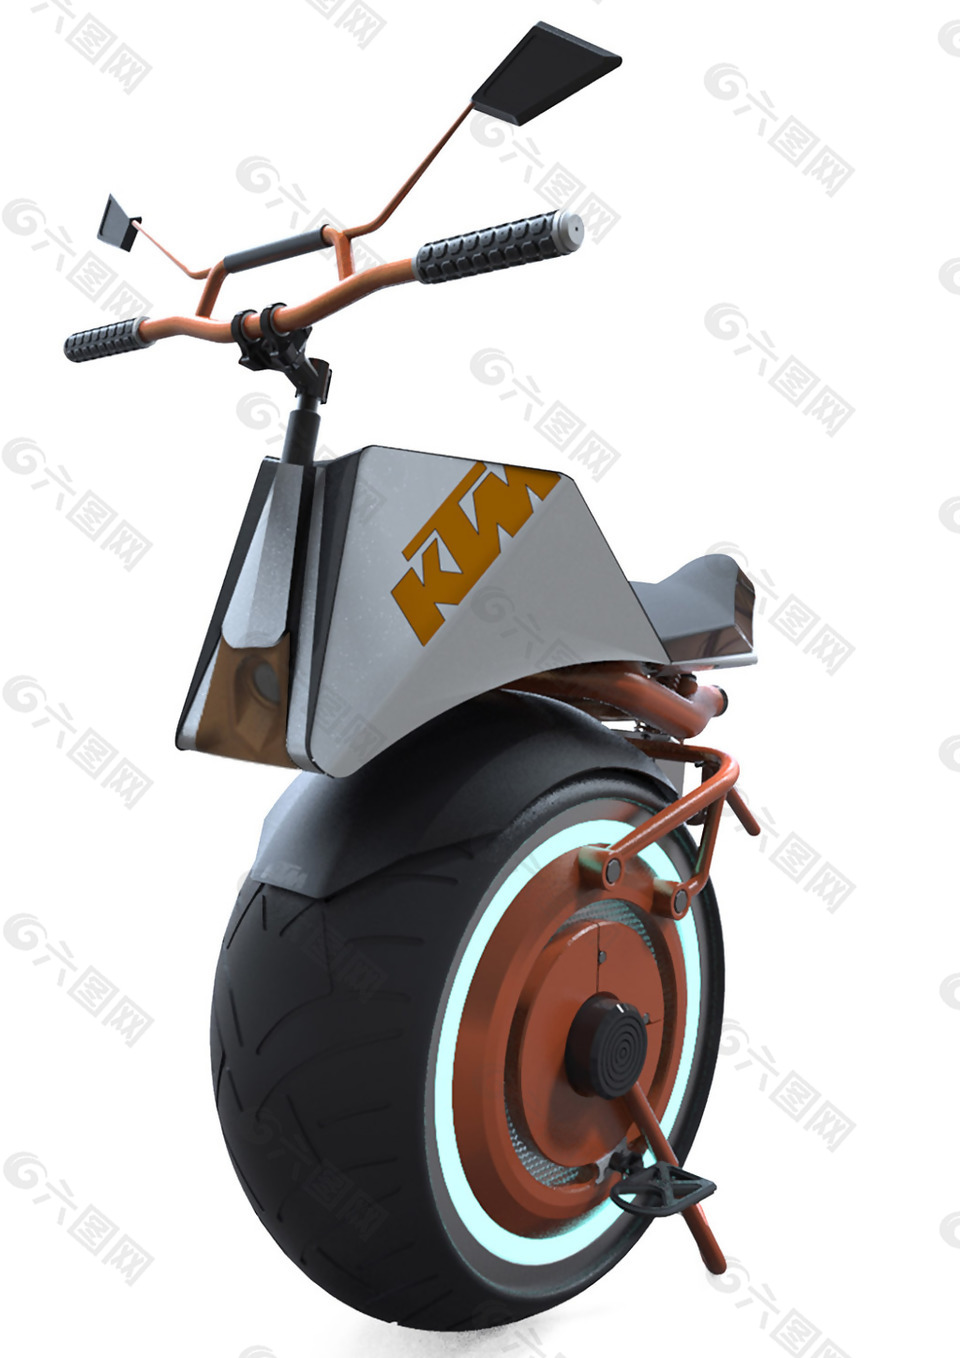 酷炫独轮车工具产品设计JPG